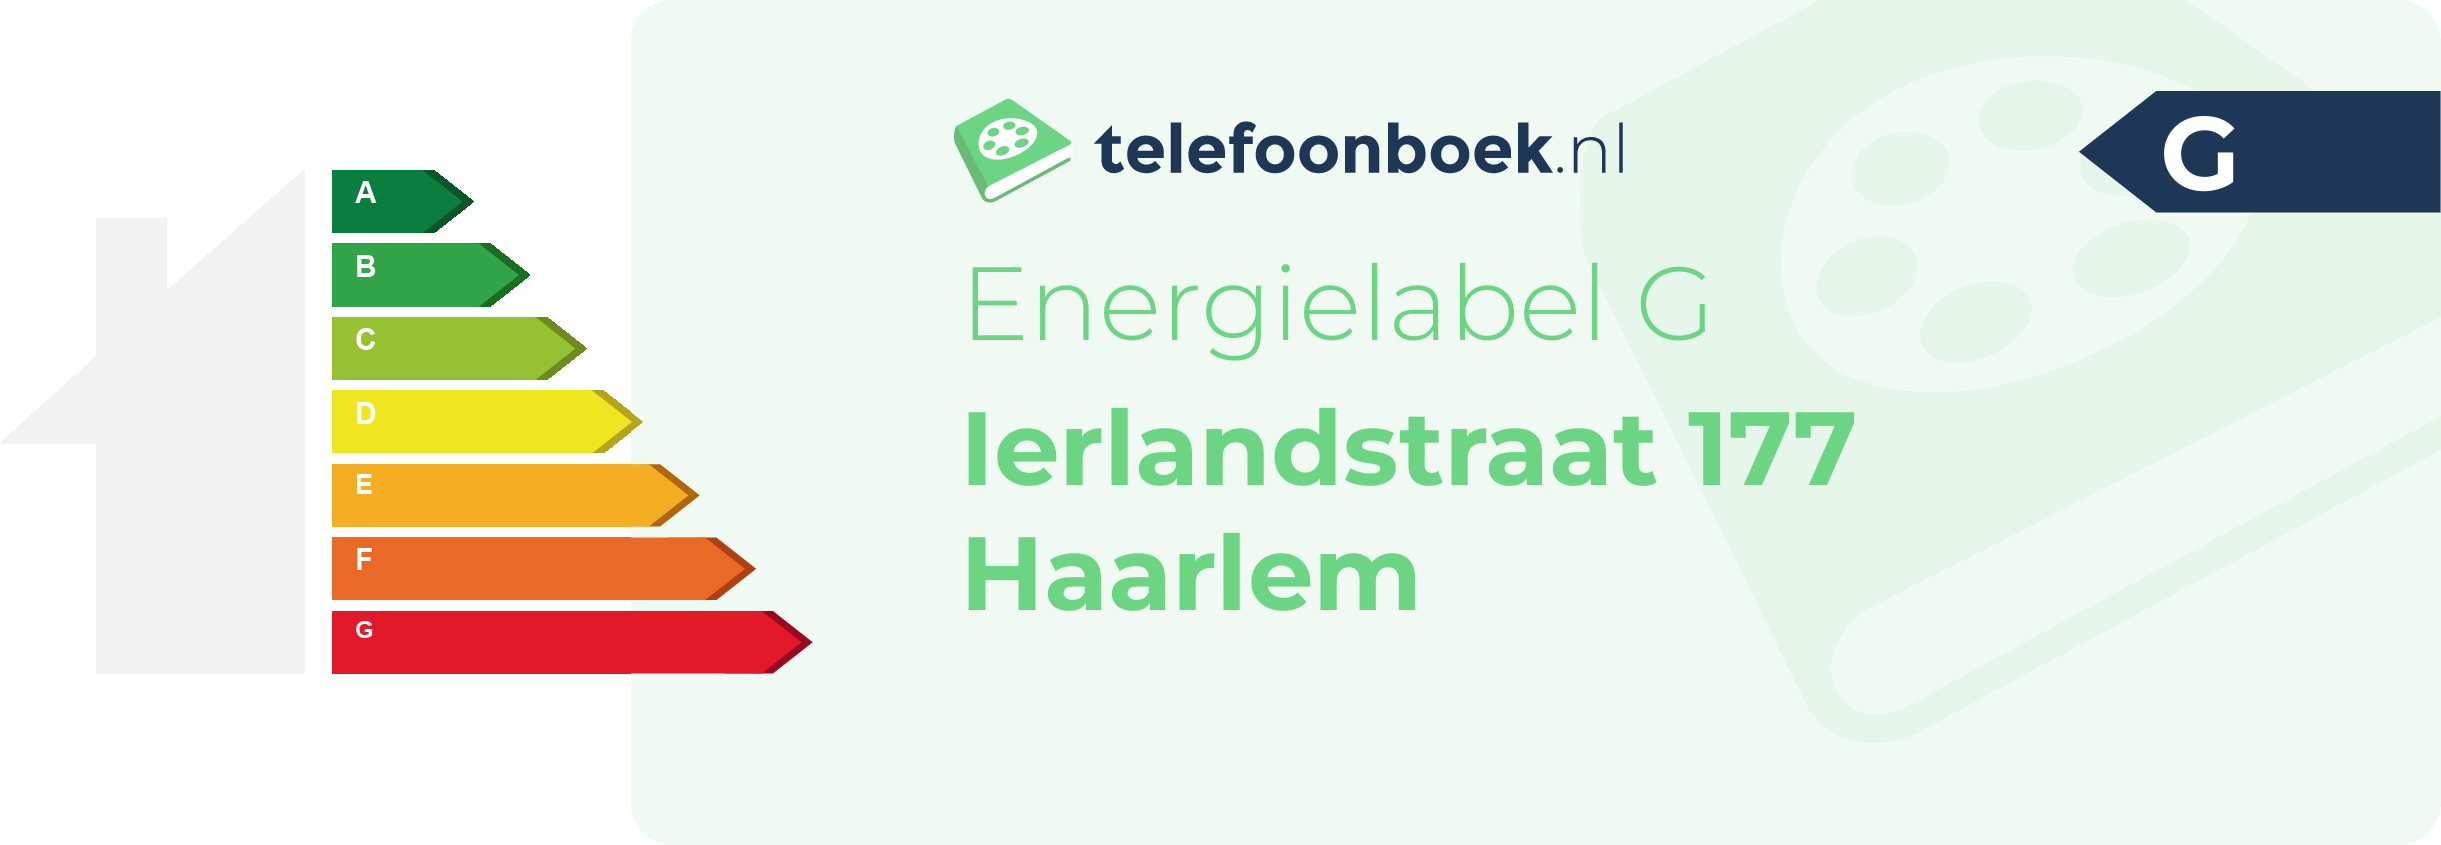 Energielabel Ierlandstraat 177 Haarlem